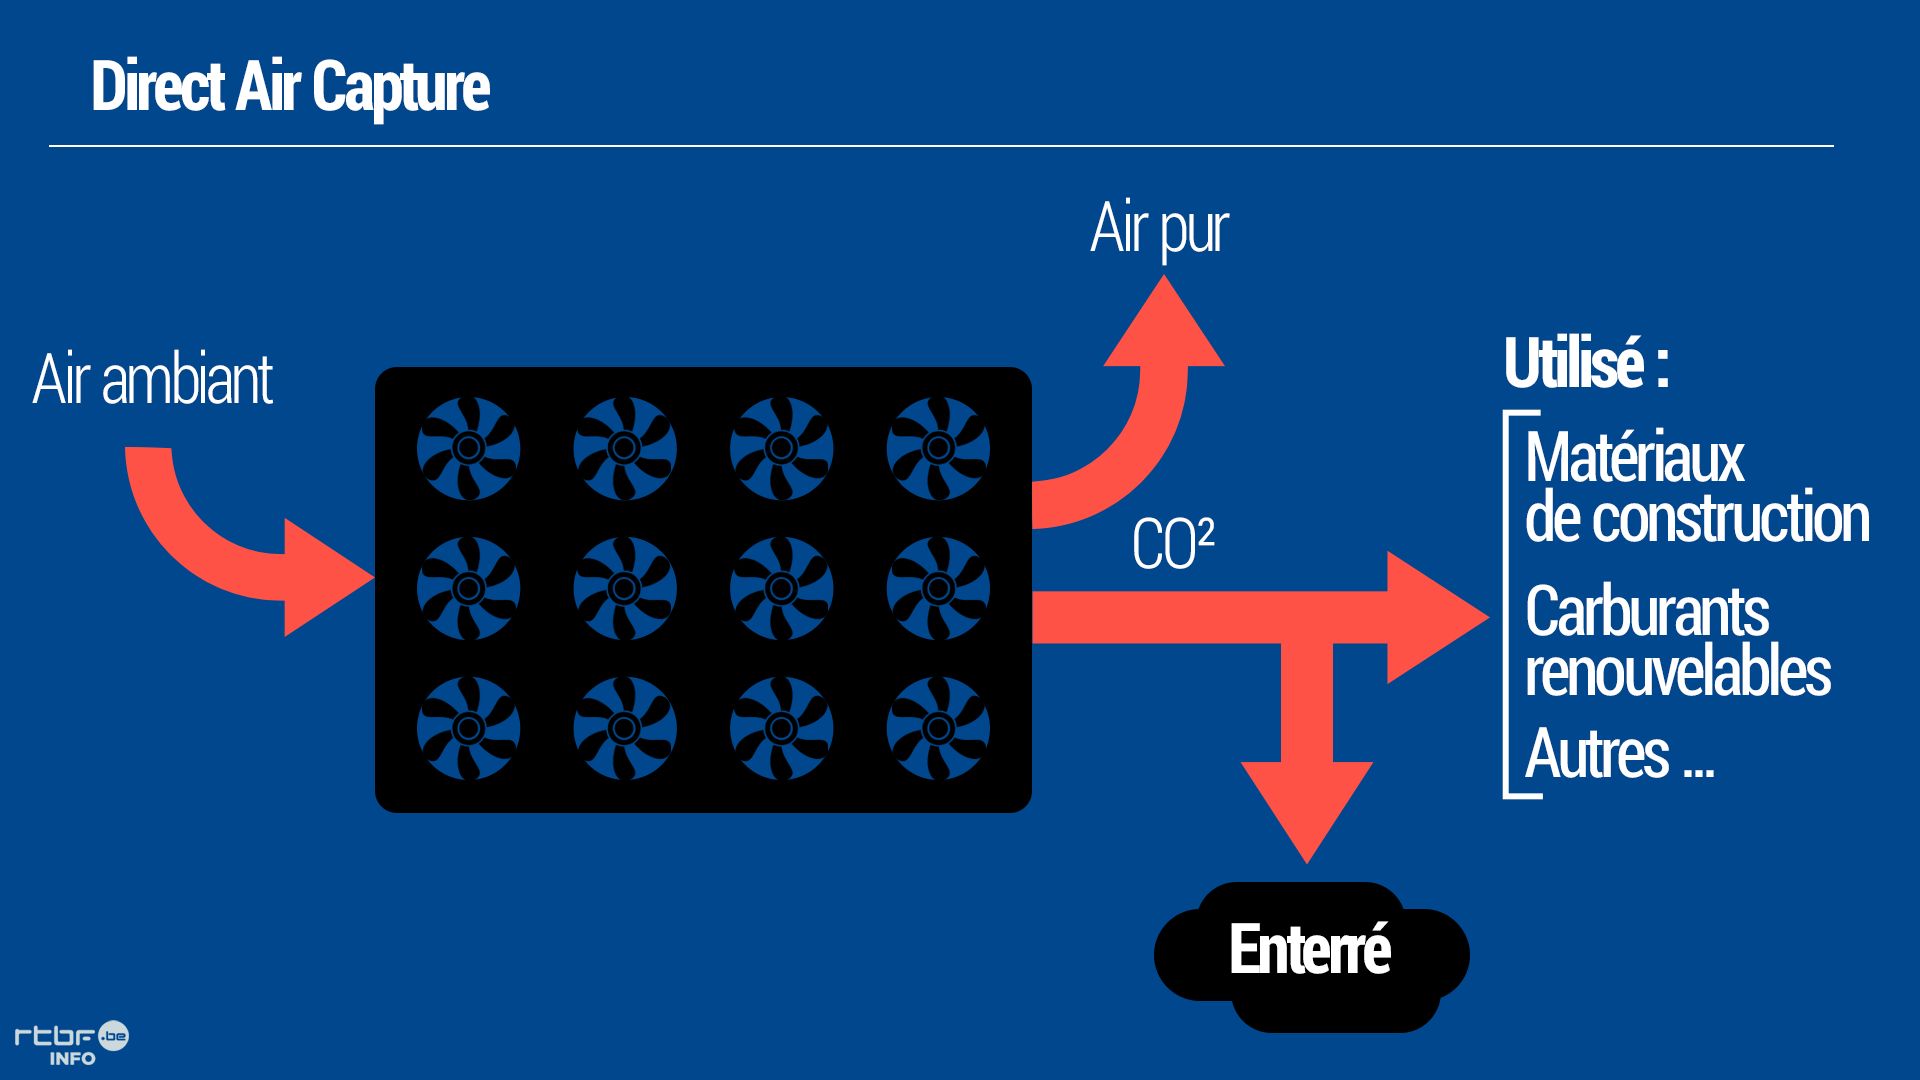 Le "Direct Air Capture" permet d’aspirer le C02 de l’atmosphère